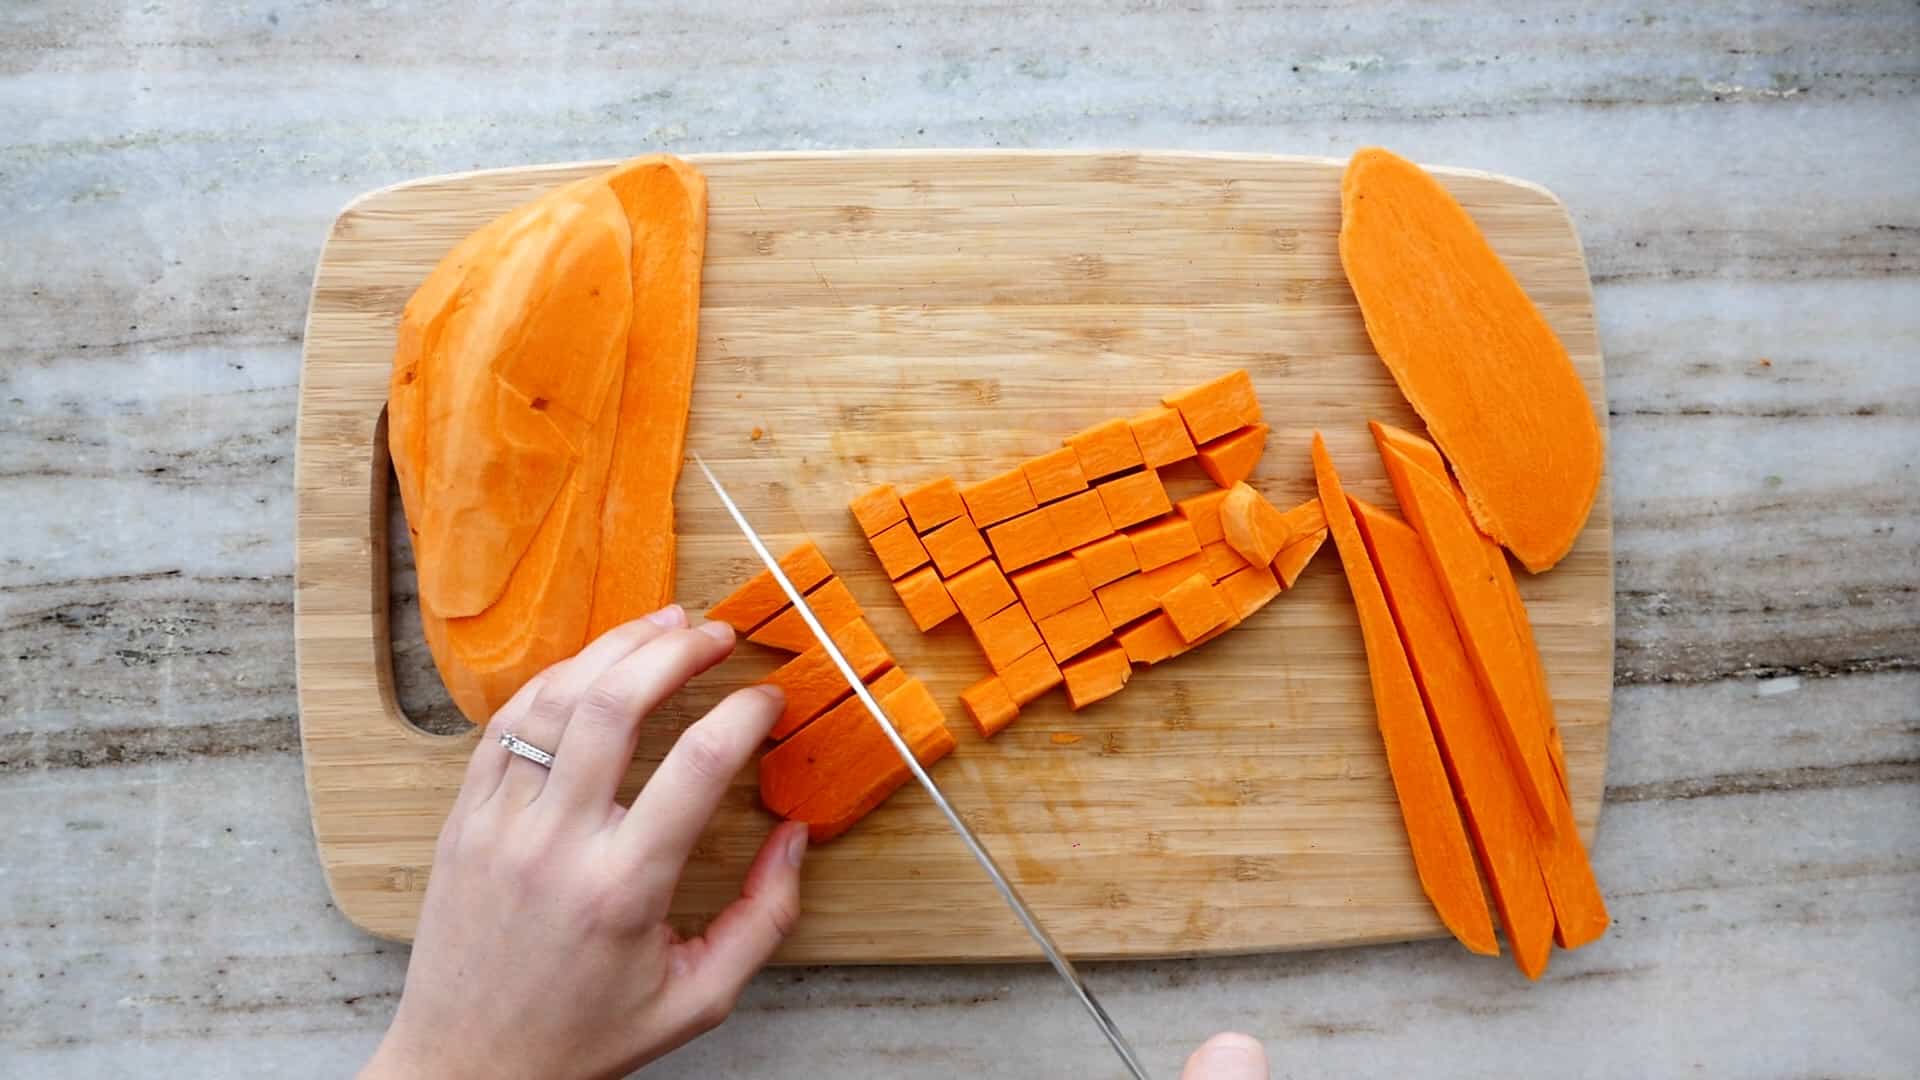 https://itsavegworldafterall.com/wp-content/uploads/2022/02/How-to-Cut-Sweet-Potatoes-4.jpg